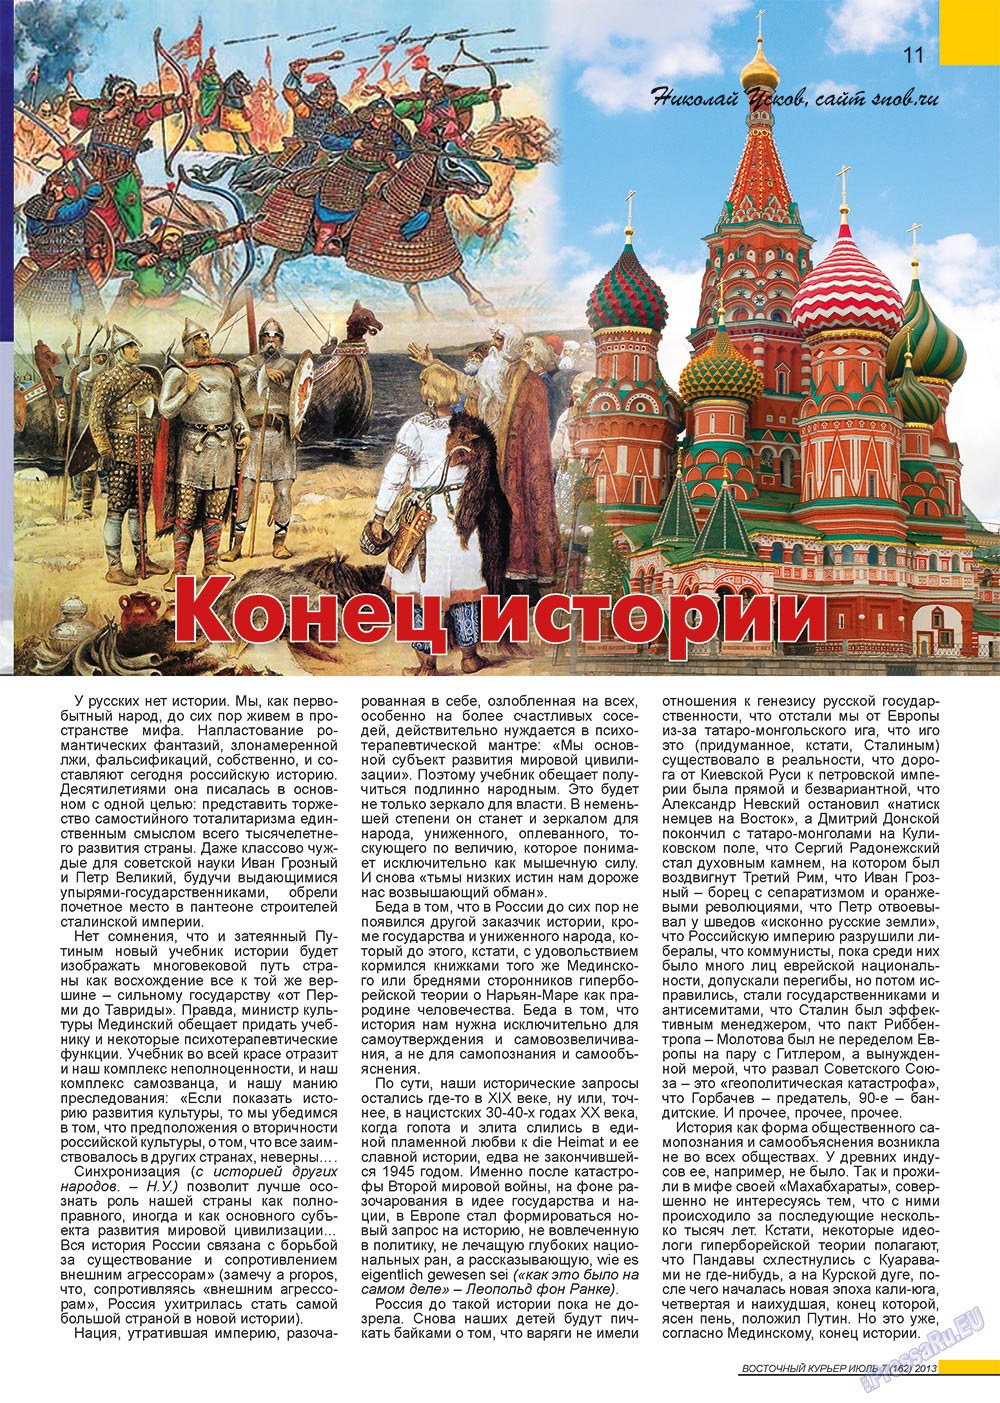 Восточный курьер (журнал). 2013 год, номер 7, стр. 11